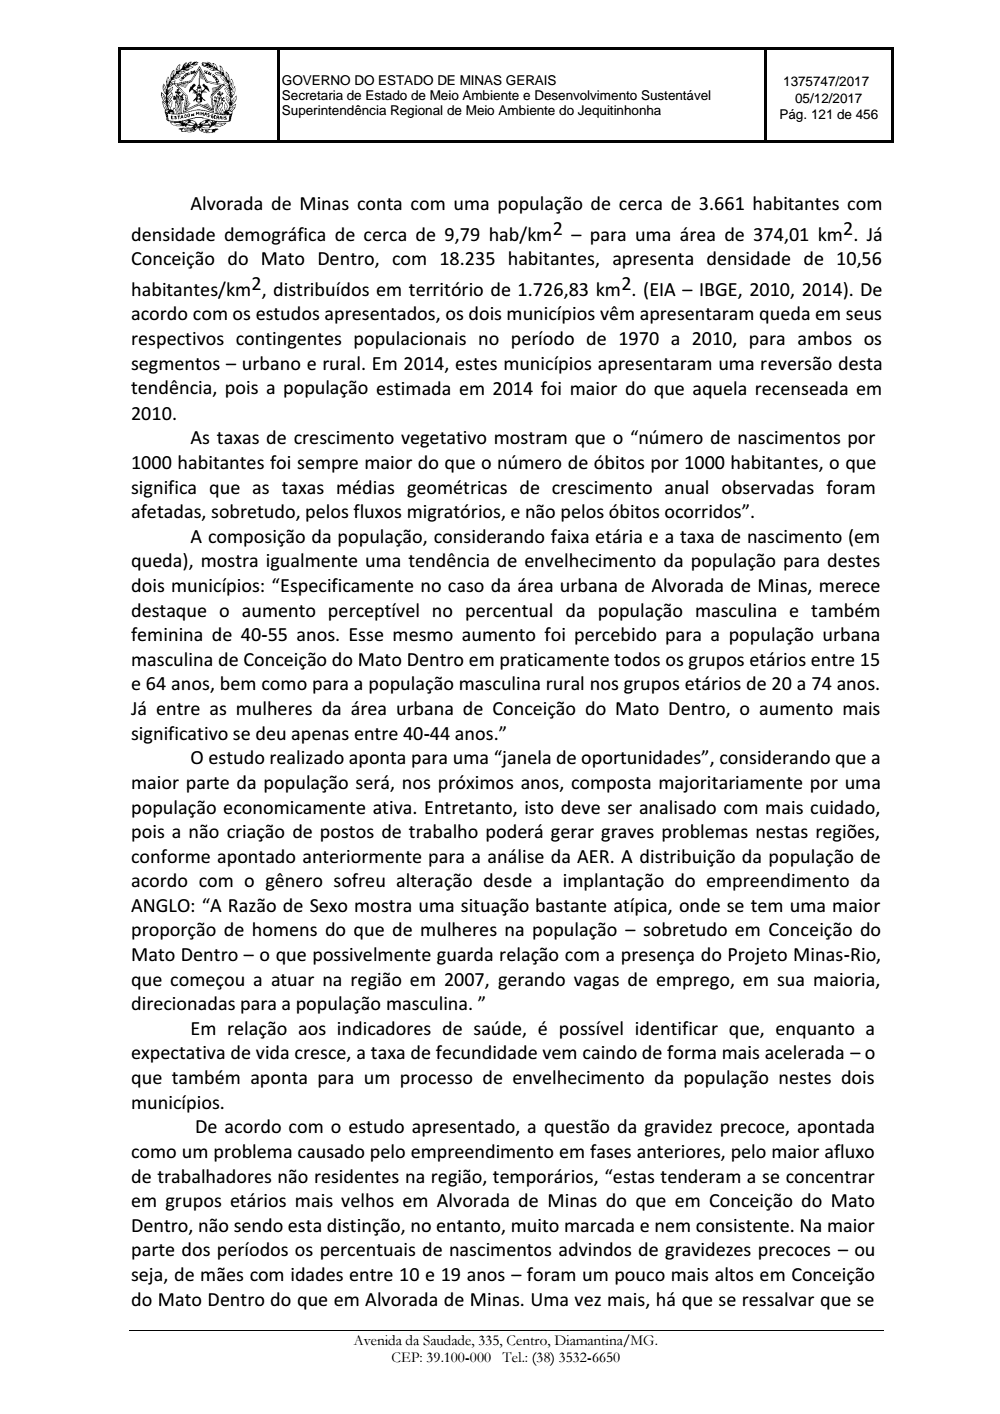 Page 121 from Parecer único da Secretaria de estado de Meio Ambiente e Desenvolvimento Sustentável (SEMAD)